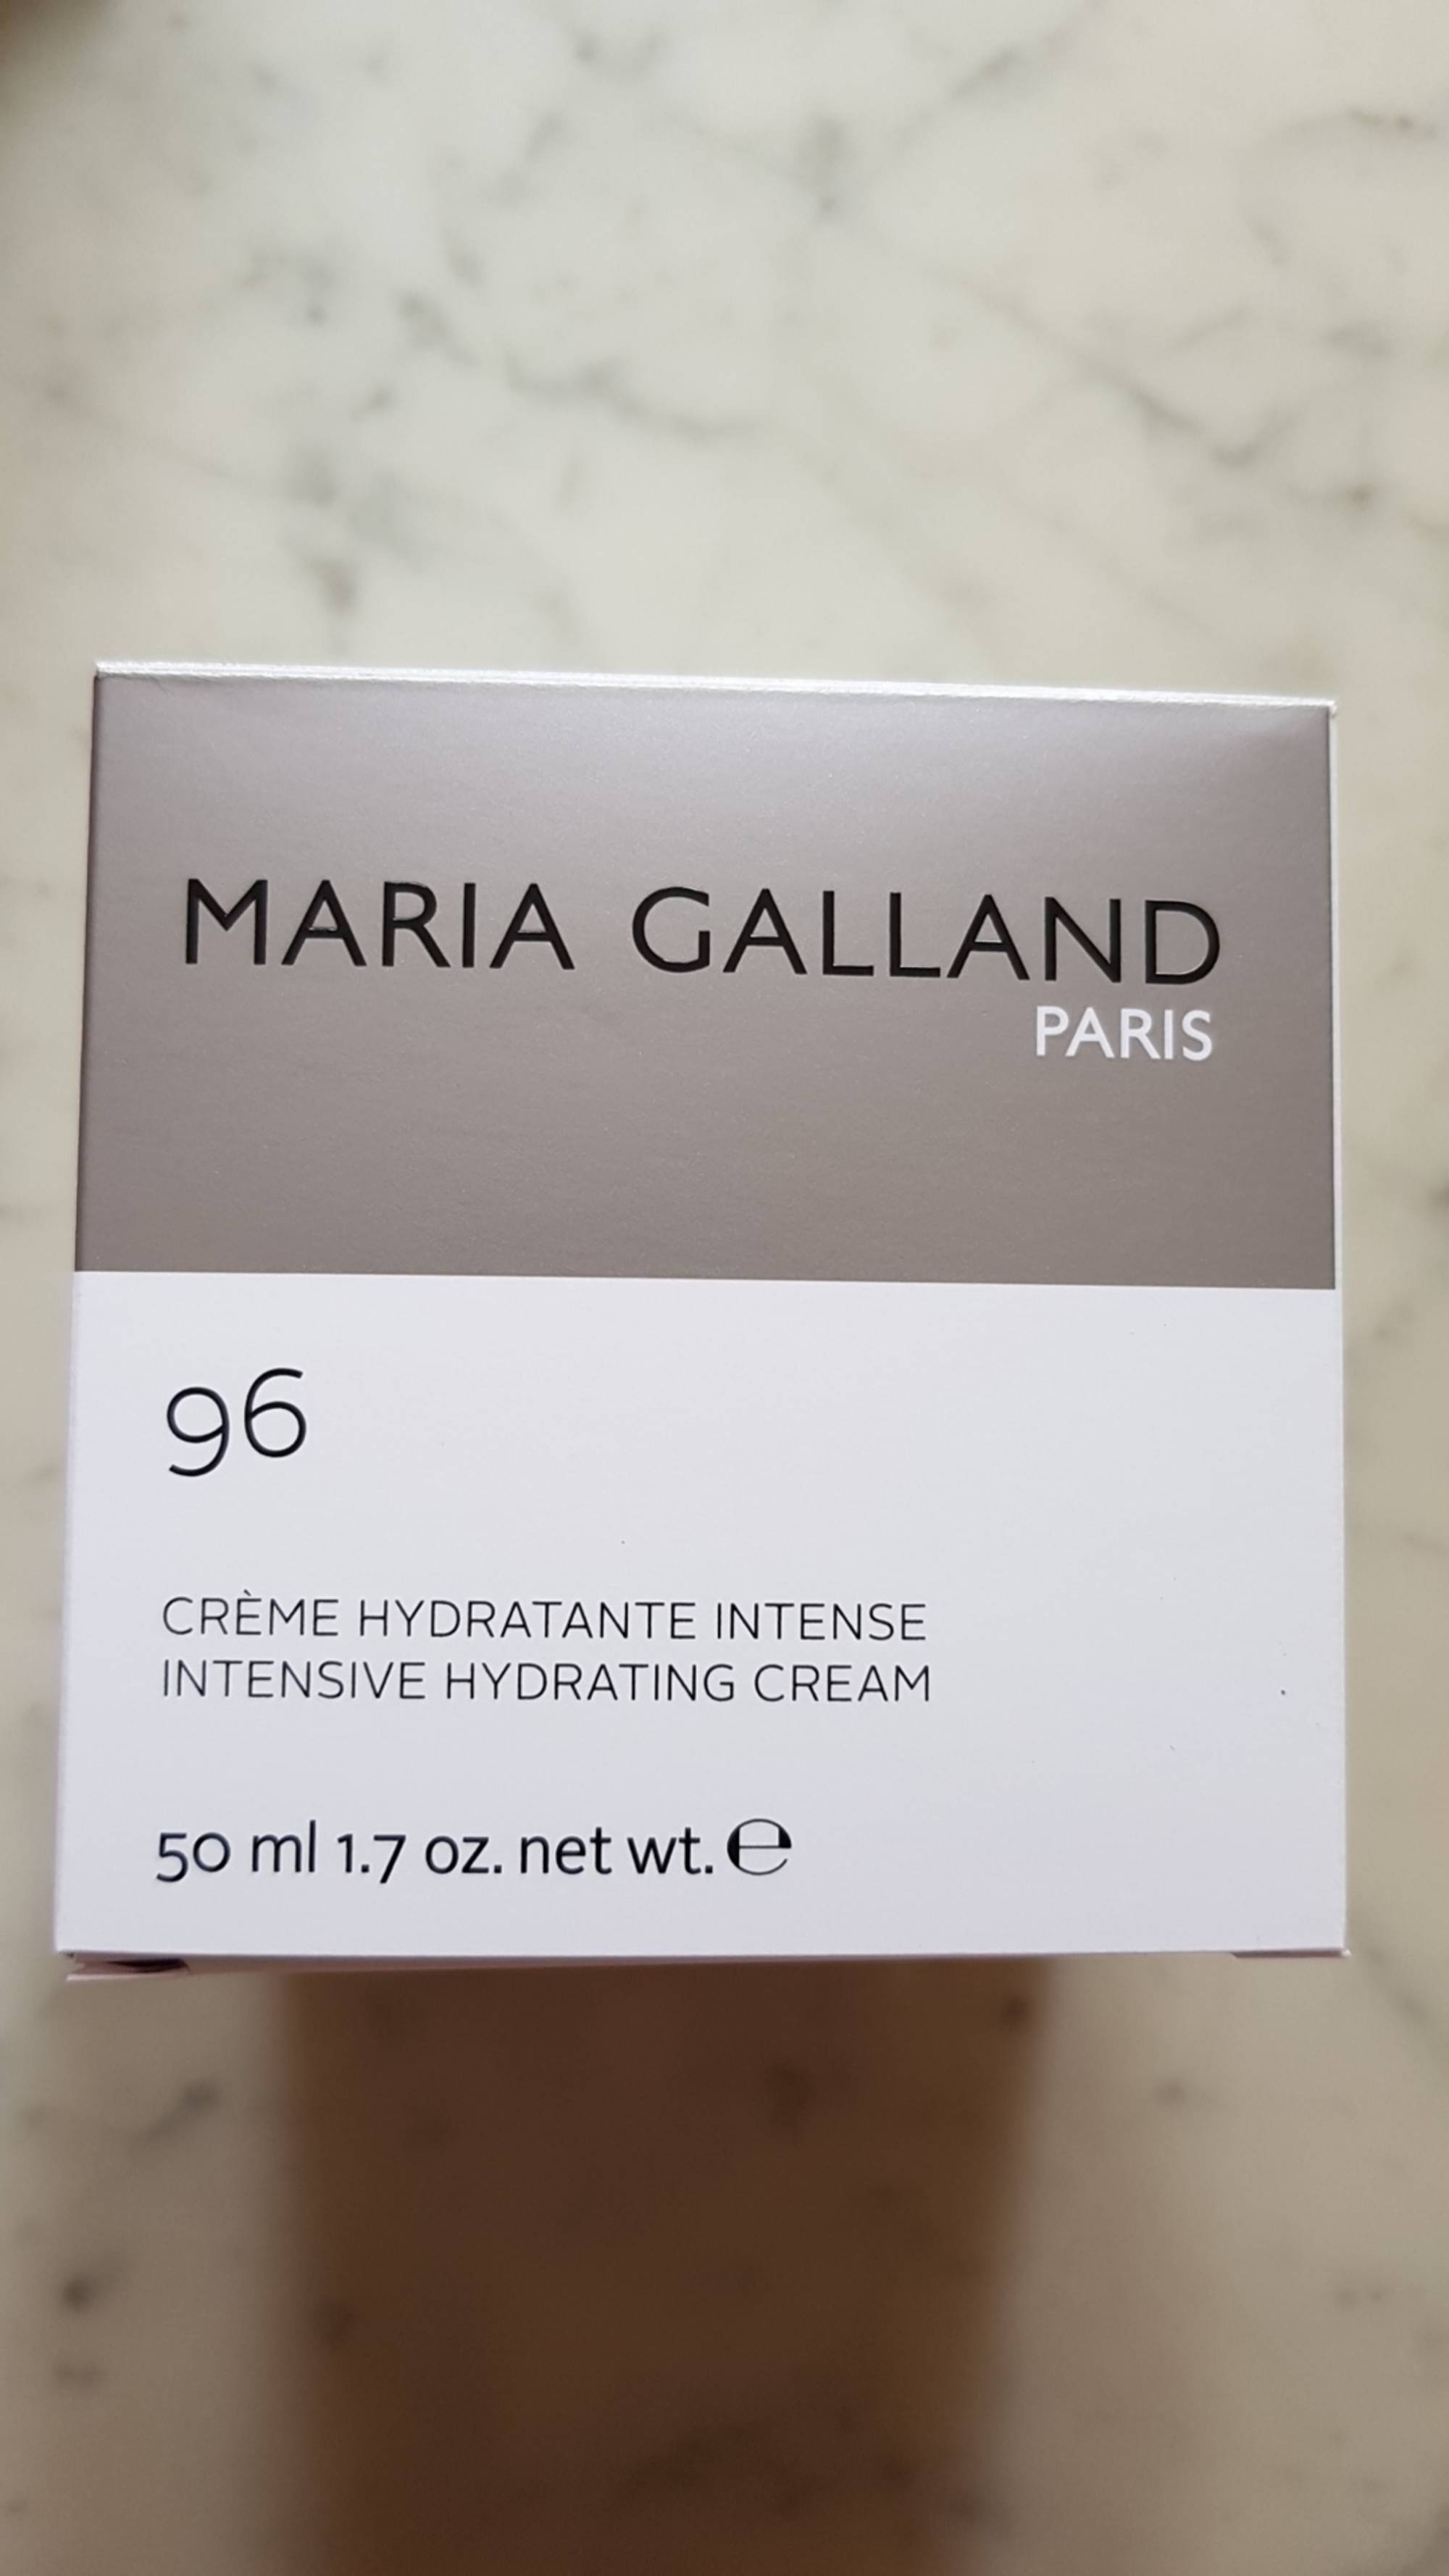 MARIA GALLAND - Crème hydratante intense 96